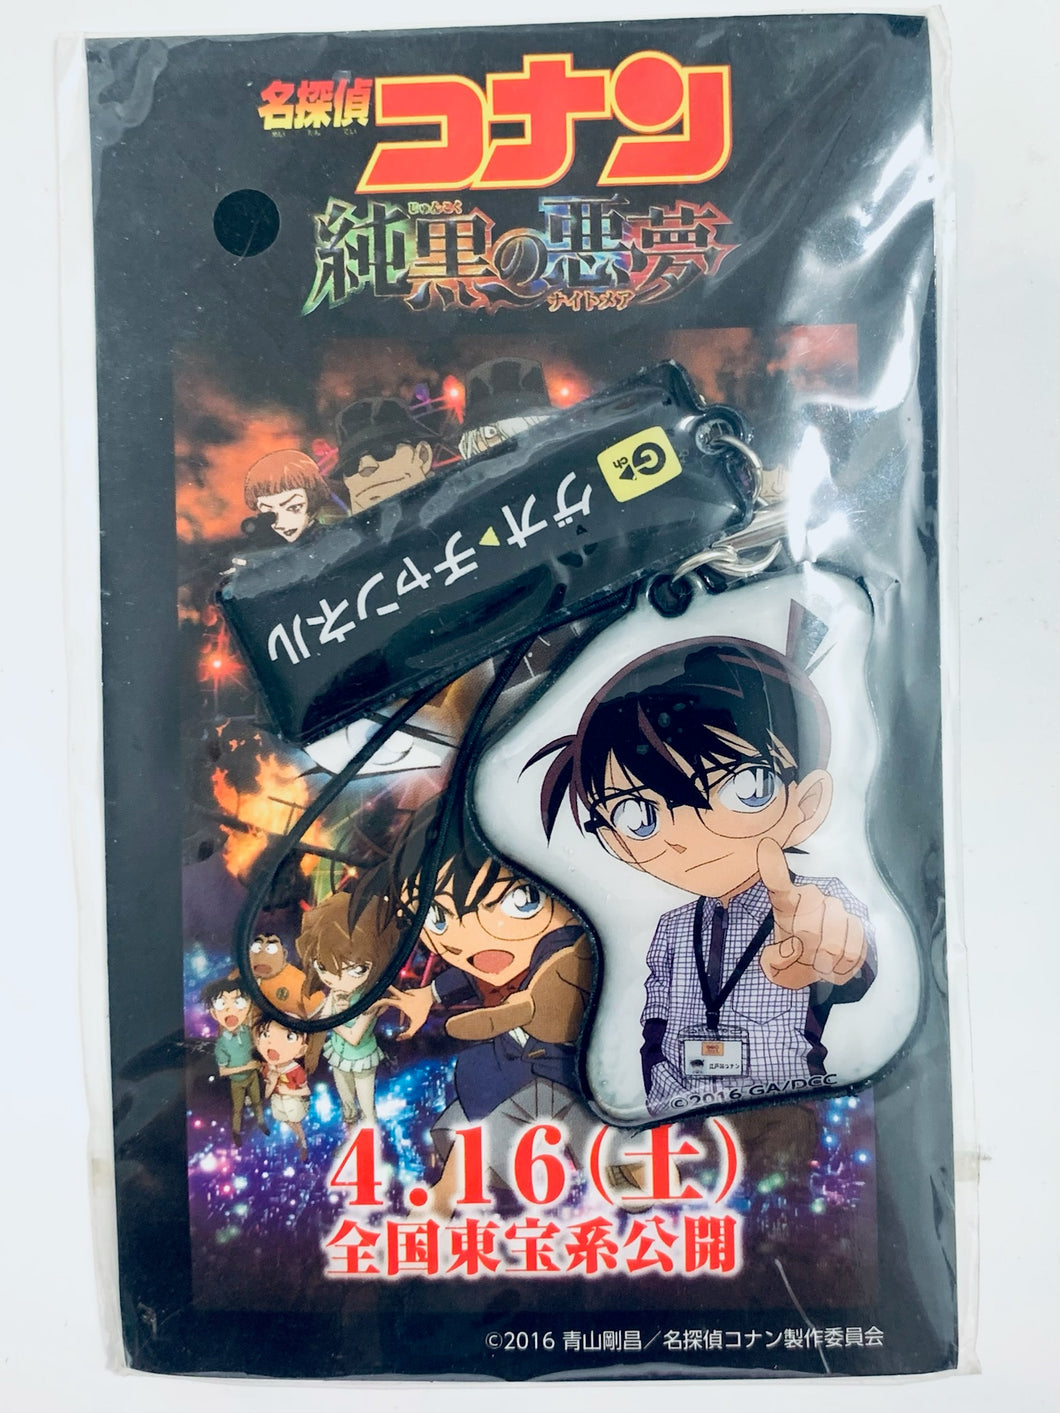 Detective Conan: The Darkest Nightmare - Edogawa Conan - Promo Original Mobile Cleaner Strap